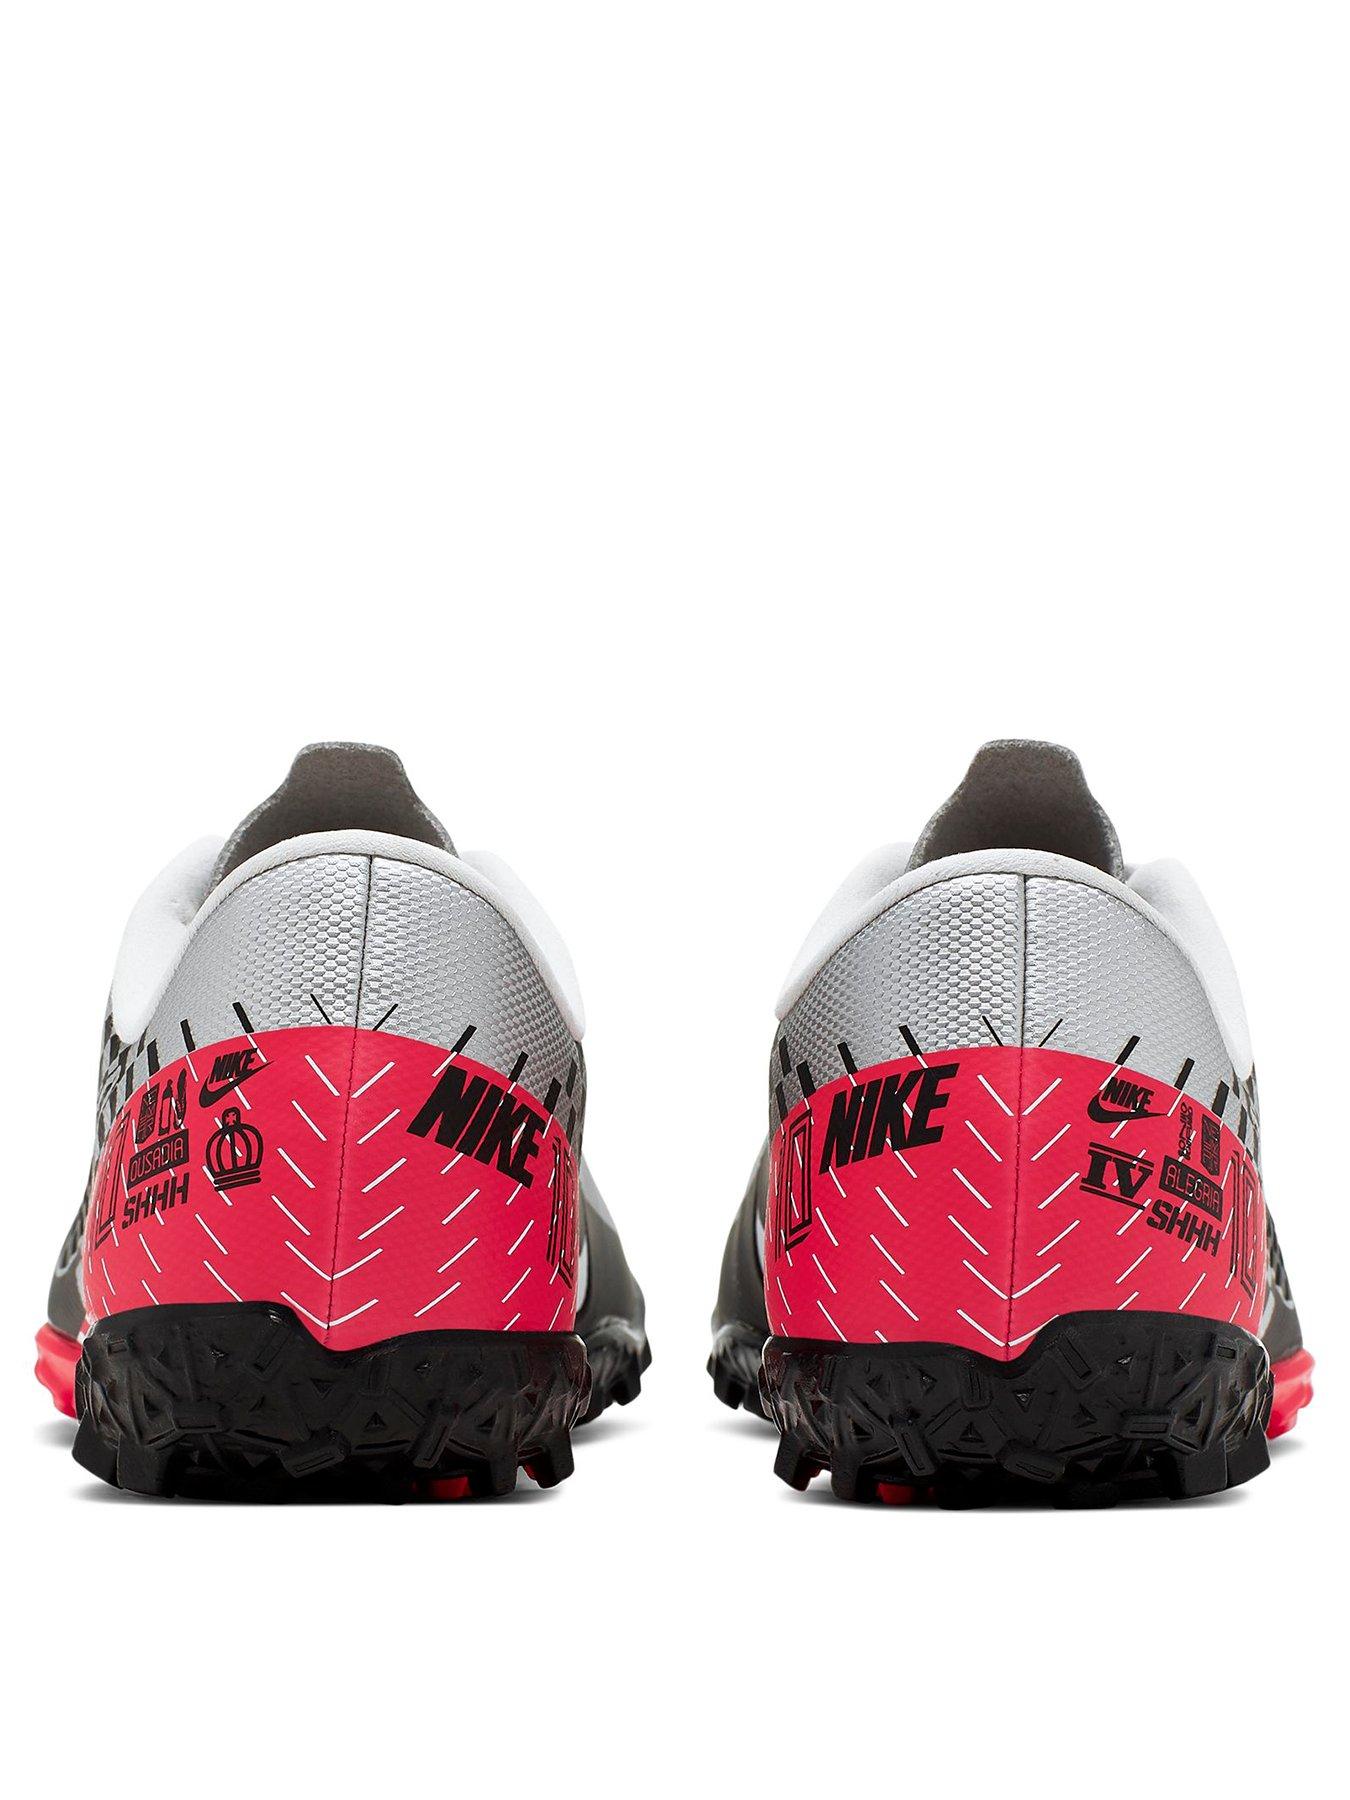 Nike Mercurial Vapor Roze schoenen kopen BESLIST.nl